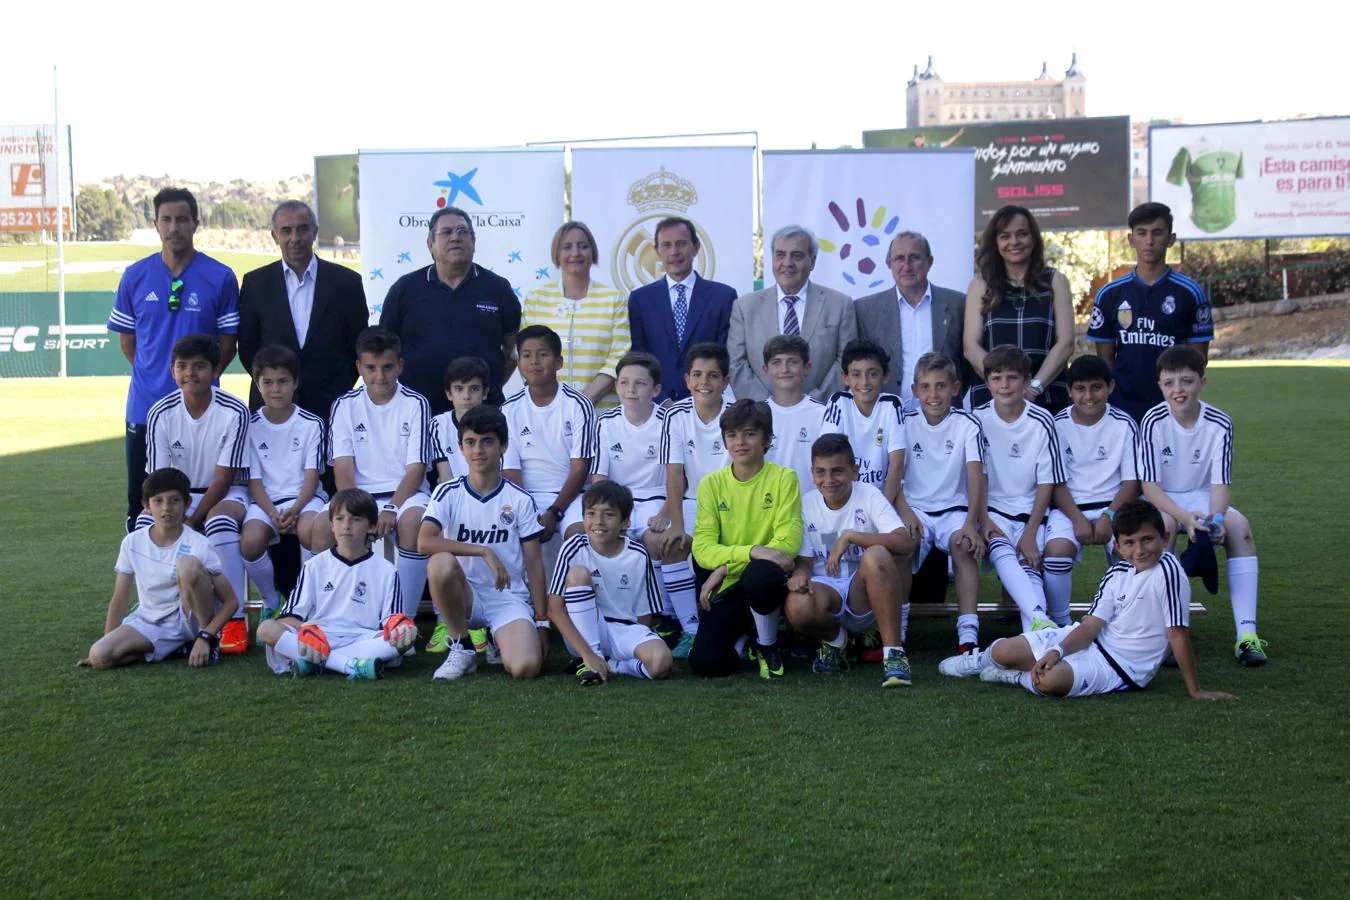 La clausura de las escuelas sociodeportivas del Real Madrid, en imágenes